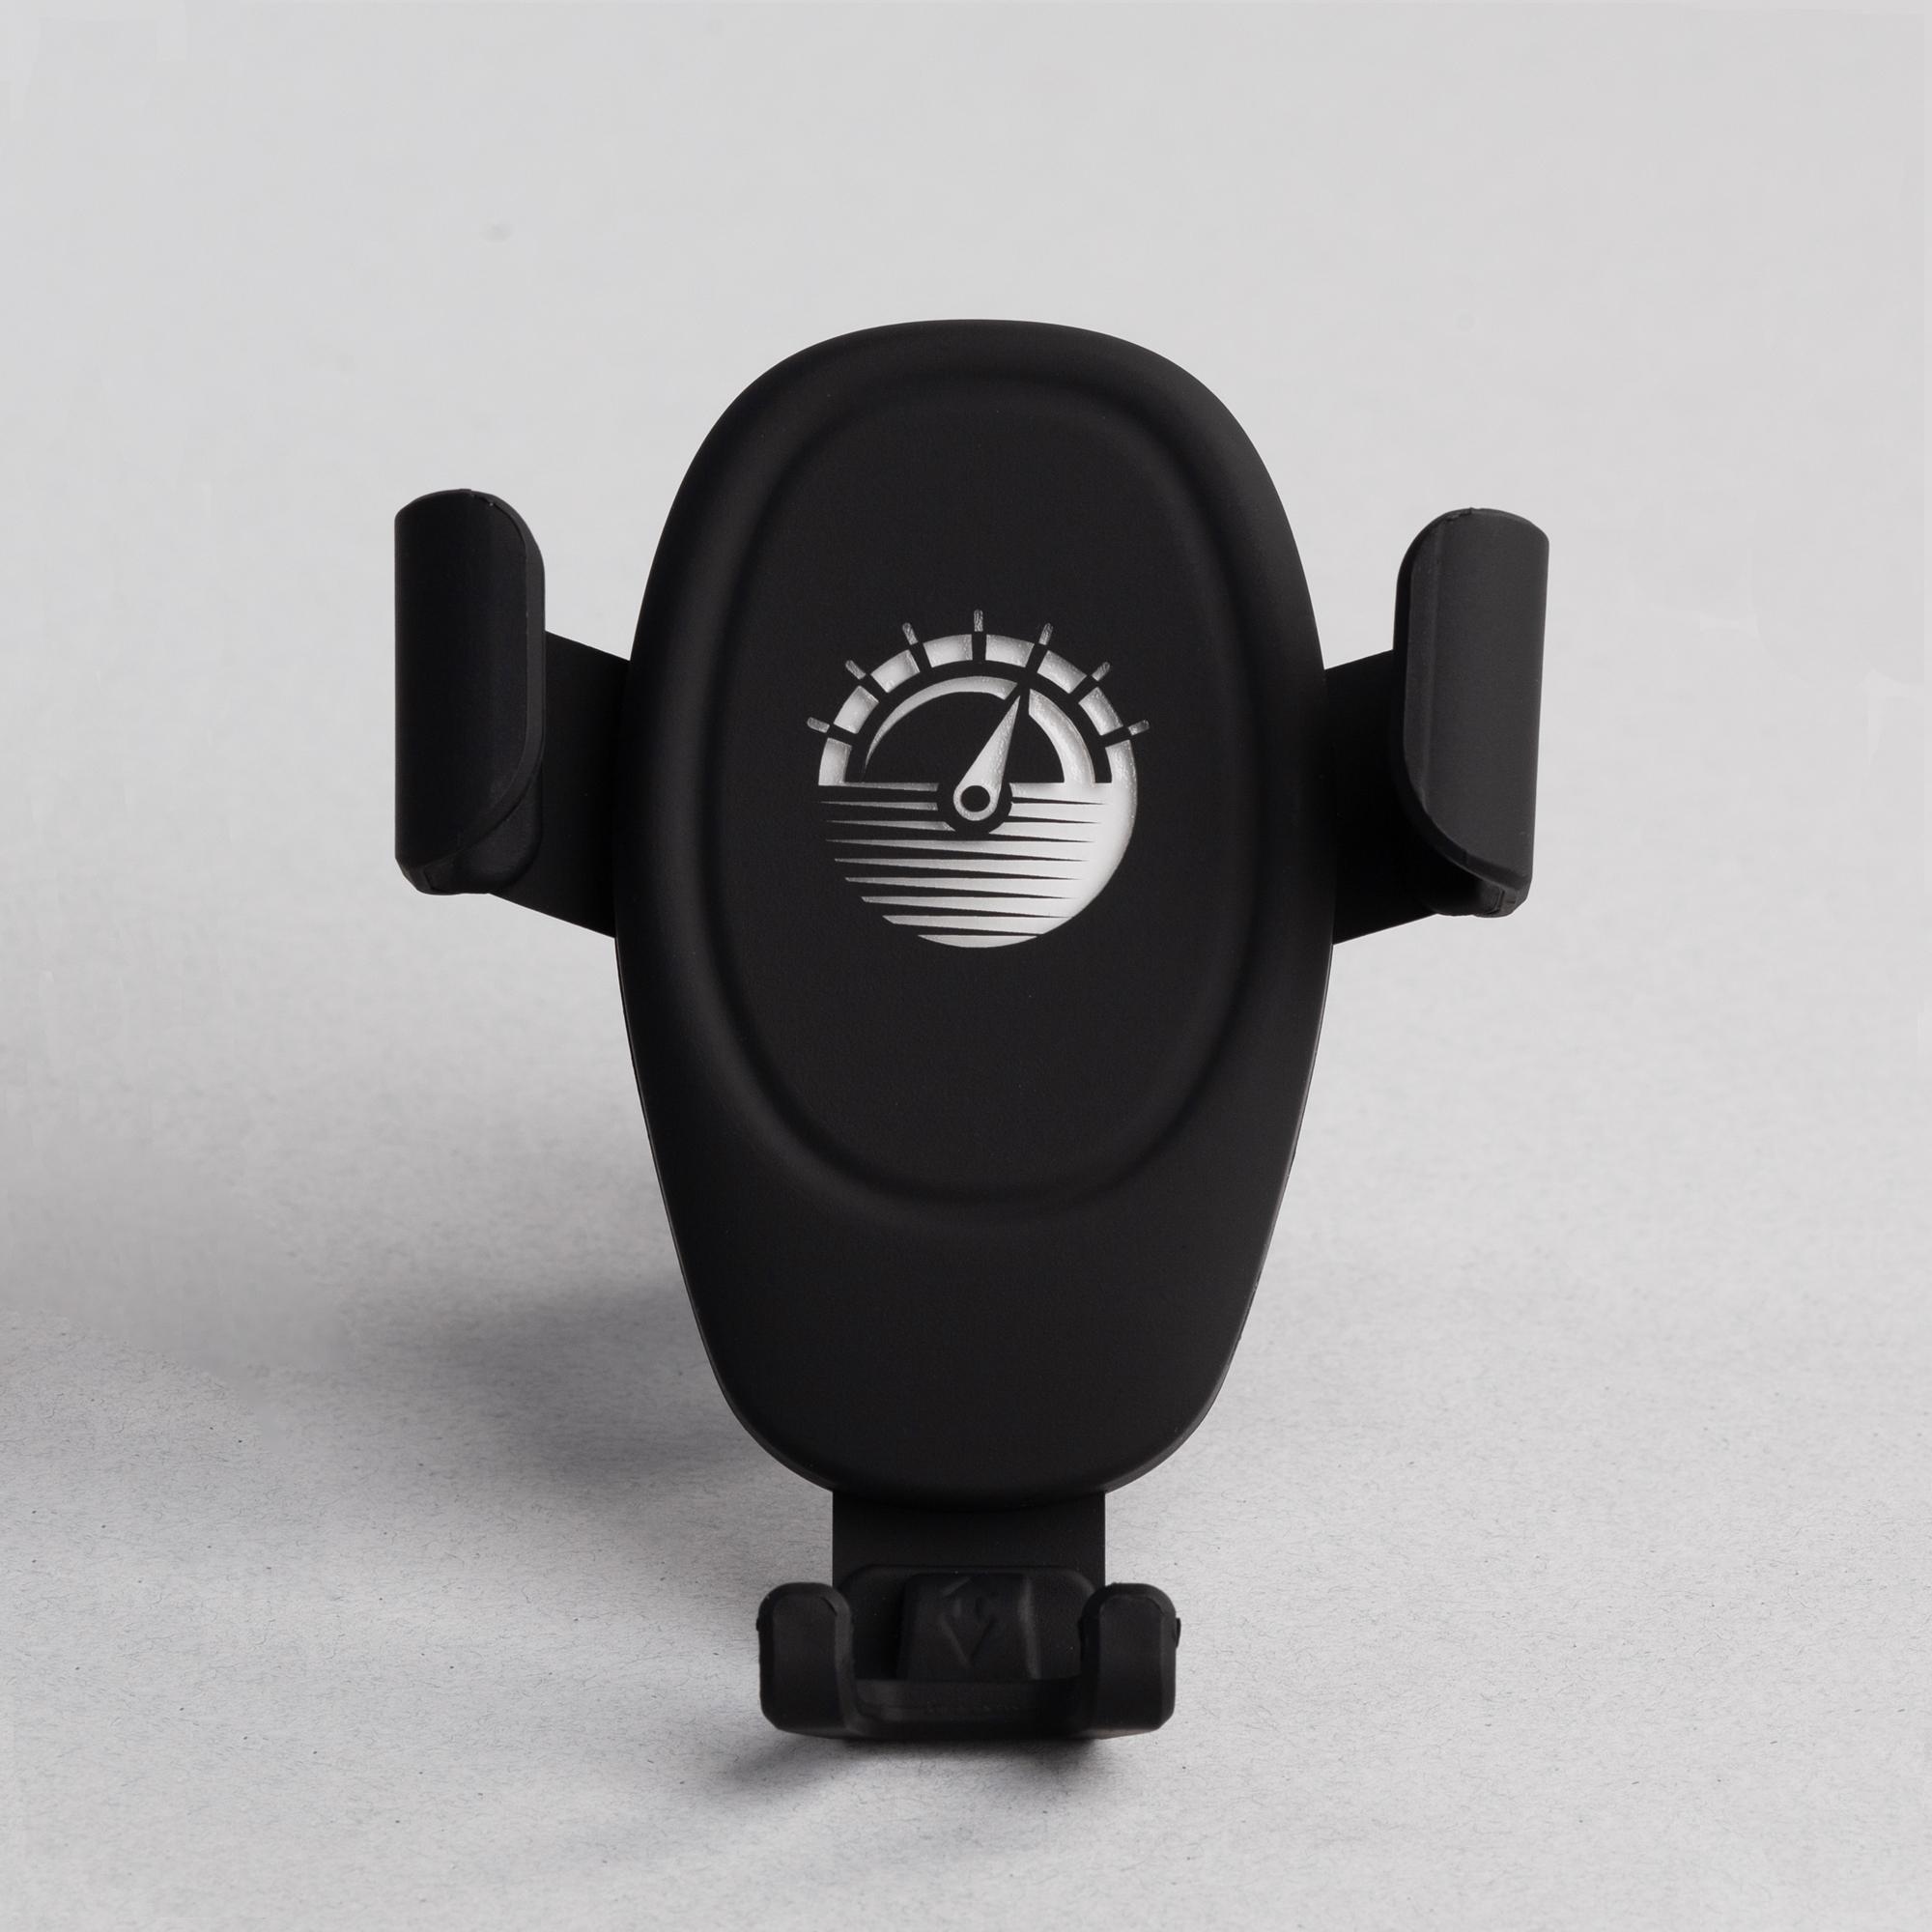 Автомобильное беспроводное (10W) зарядное устройство "Clamp SOFTTOUCH" с подсветкой логотипа, цвет черный, фото 1